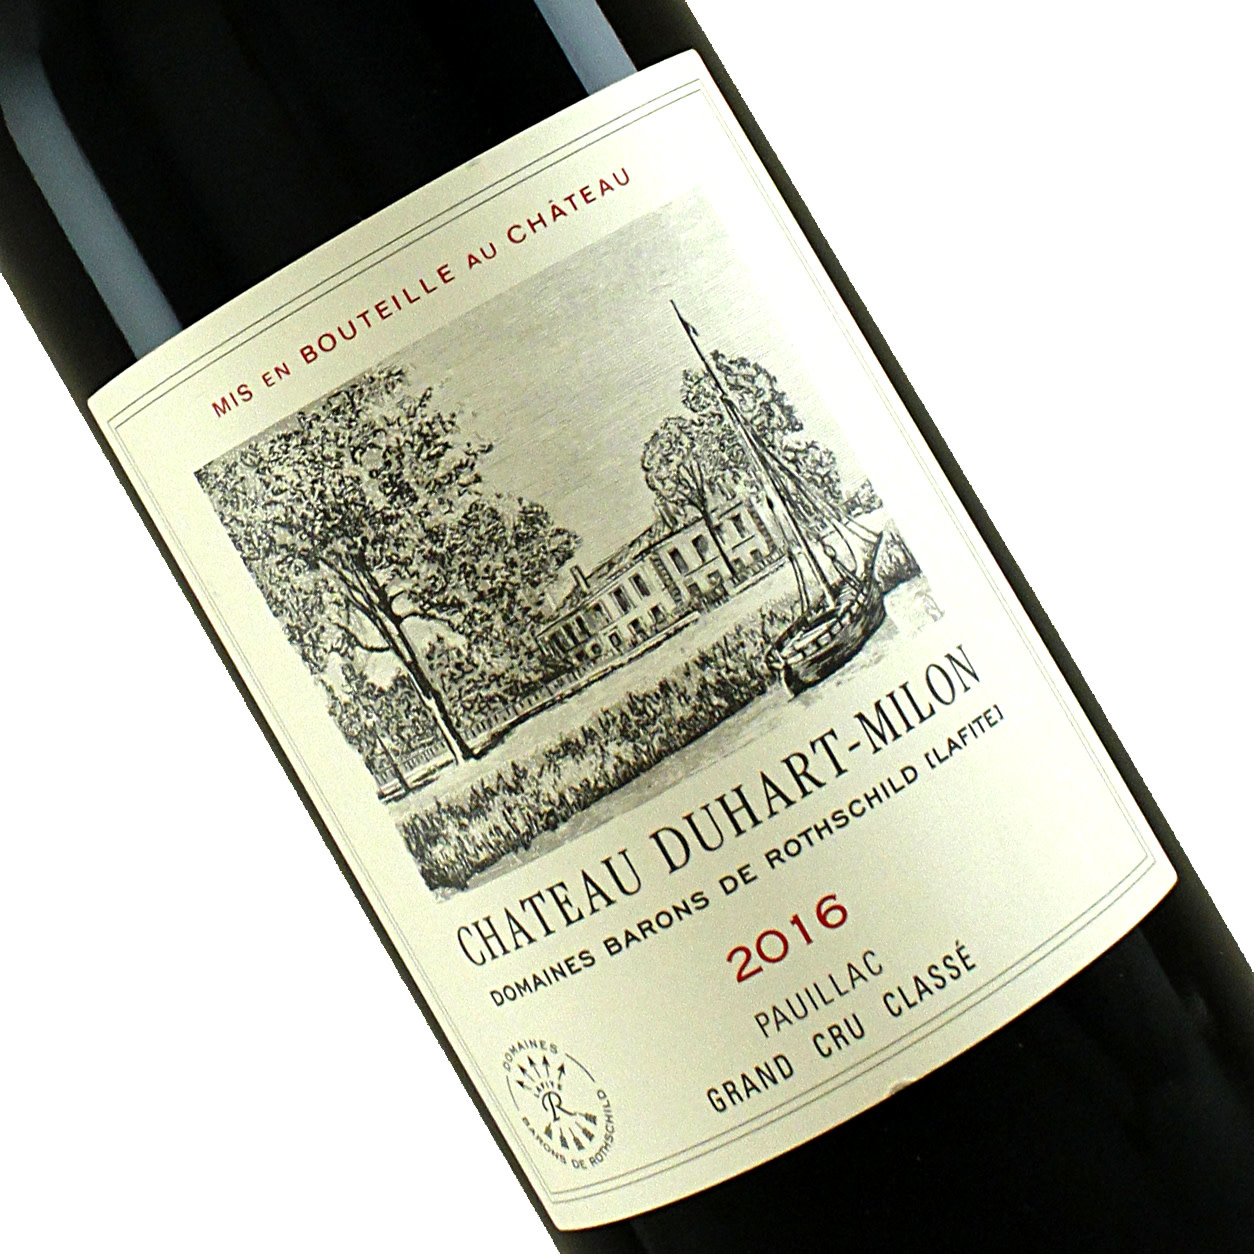 Chateau Duhart-Milon 2019 - The Bordeaux Wine Pauillac, Country